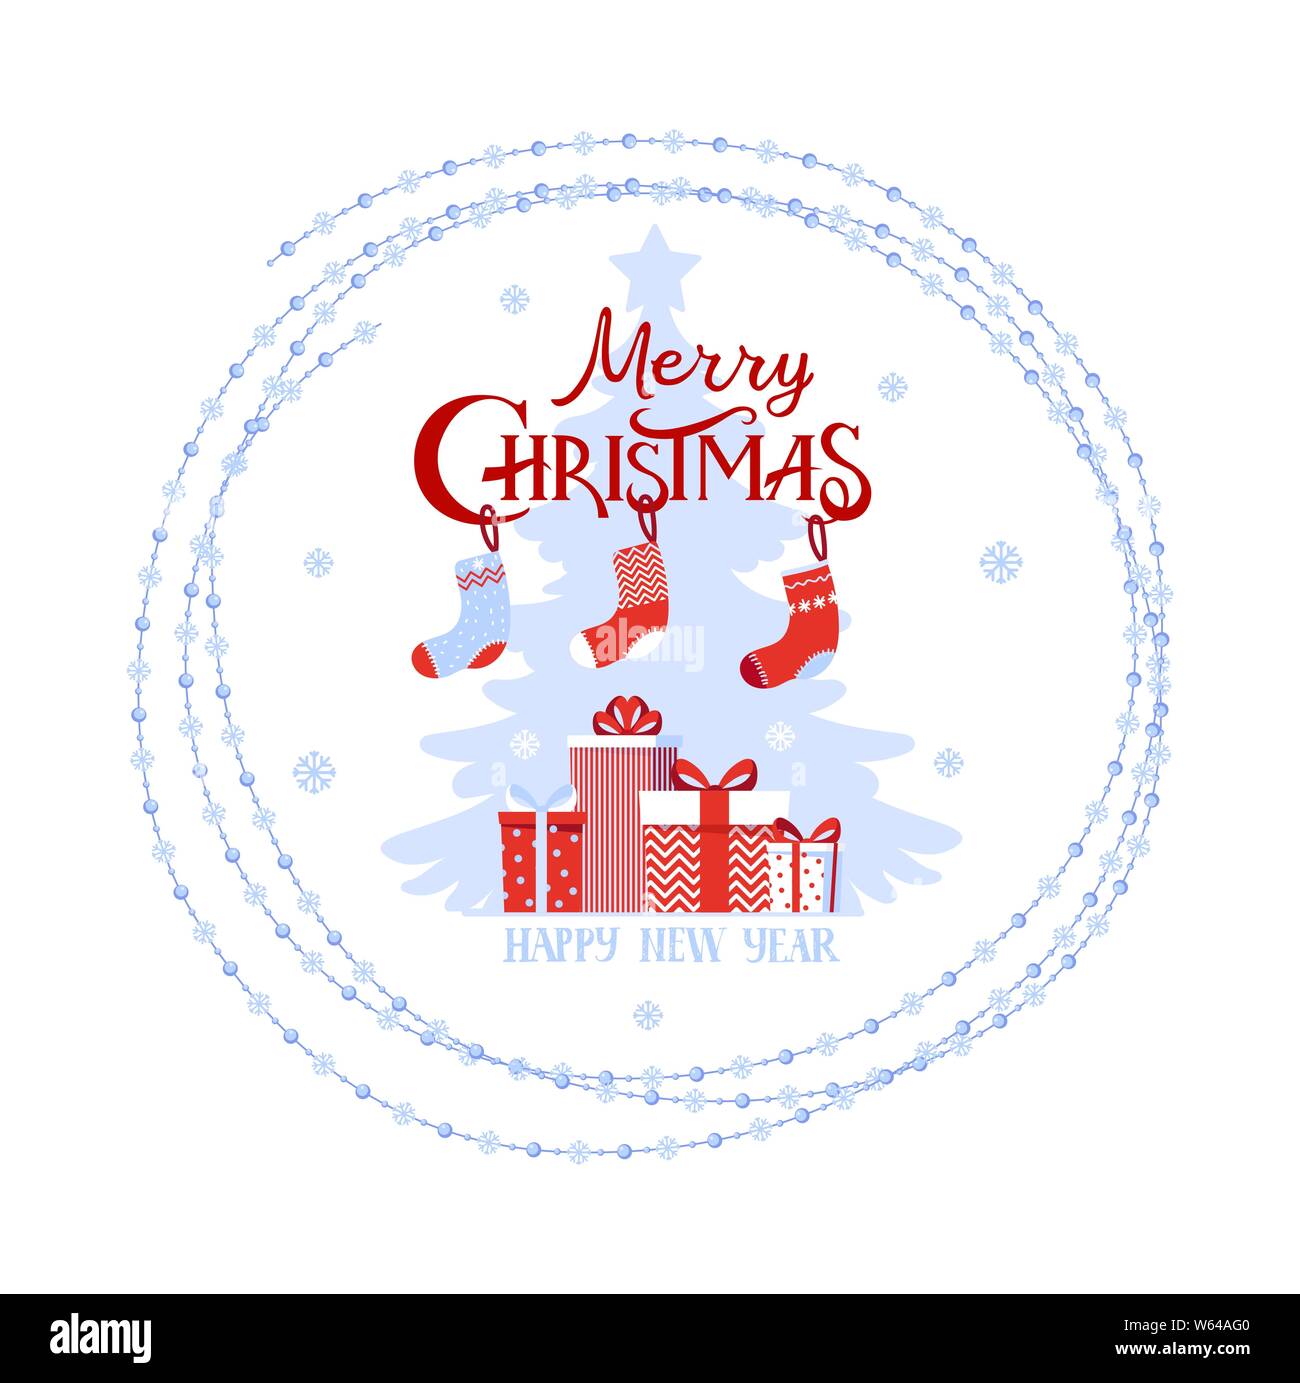 Weihnachten logo, phrase Frohe Weihnachten, Kartons mit Geschenken und Weihnachten Socken. Element für Design Postkarte, Grüße, Banner. Vektor im flachen Stil auf weißem Hintergrund. Stock Vektor